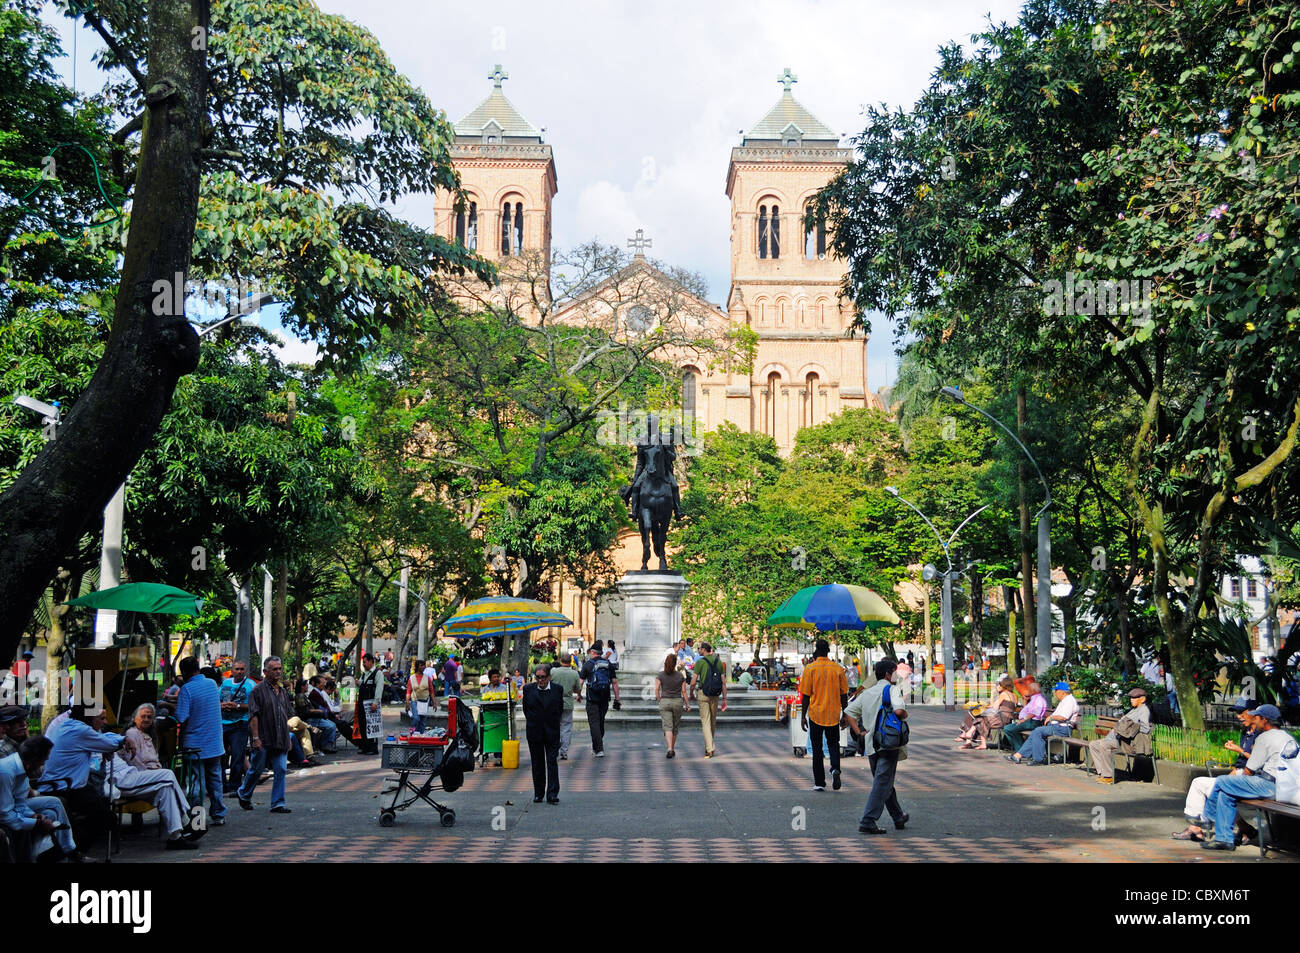 Cathedral of Medellin, main square Plaza Bolivar, Medellin, Antioquia, Colombia, Latin America Stock Photo